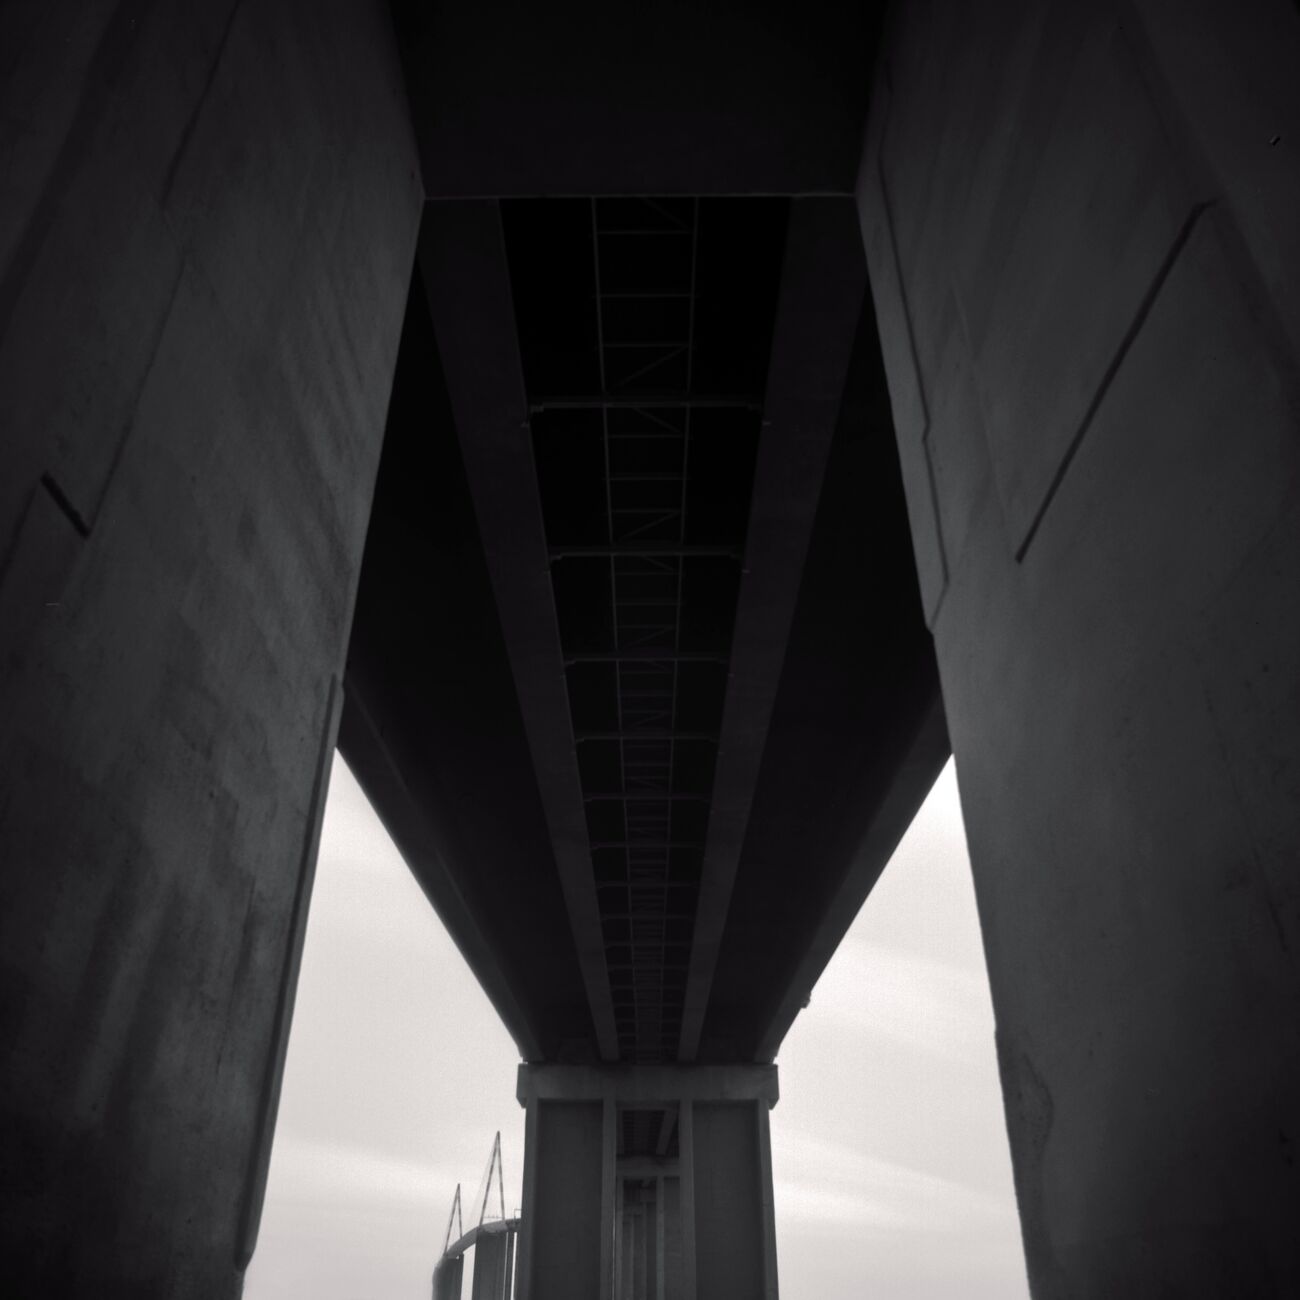 Saint-Nazaire Bridge, Study 2, Trignac, France. Février 2021. Ref-11455 - Denis Olivier Photographie